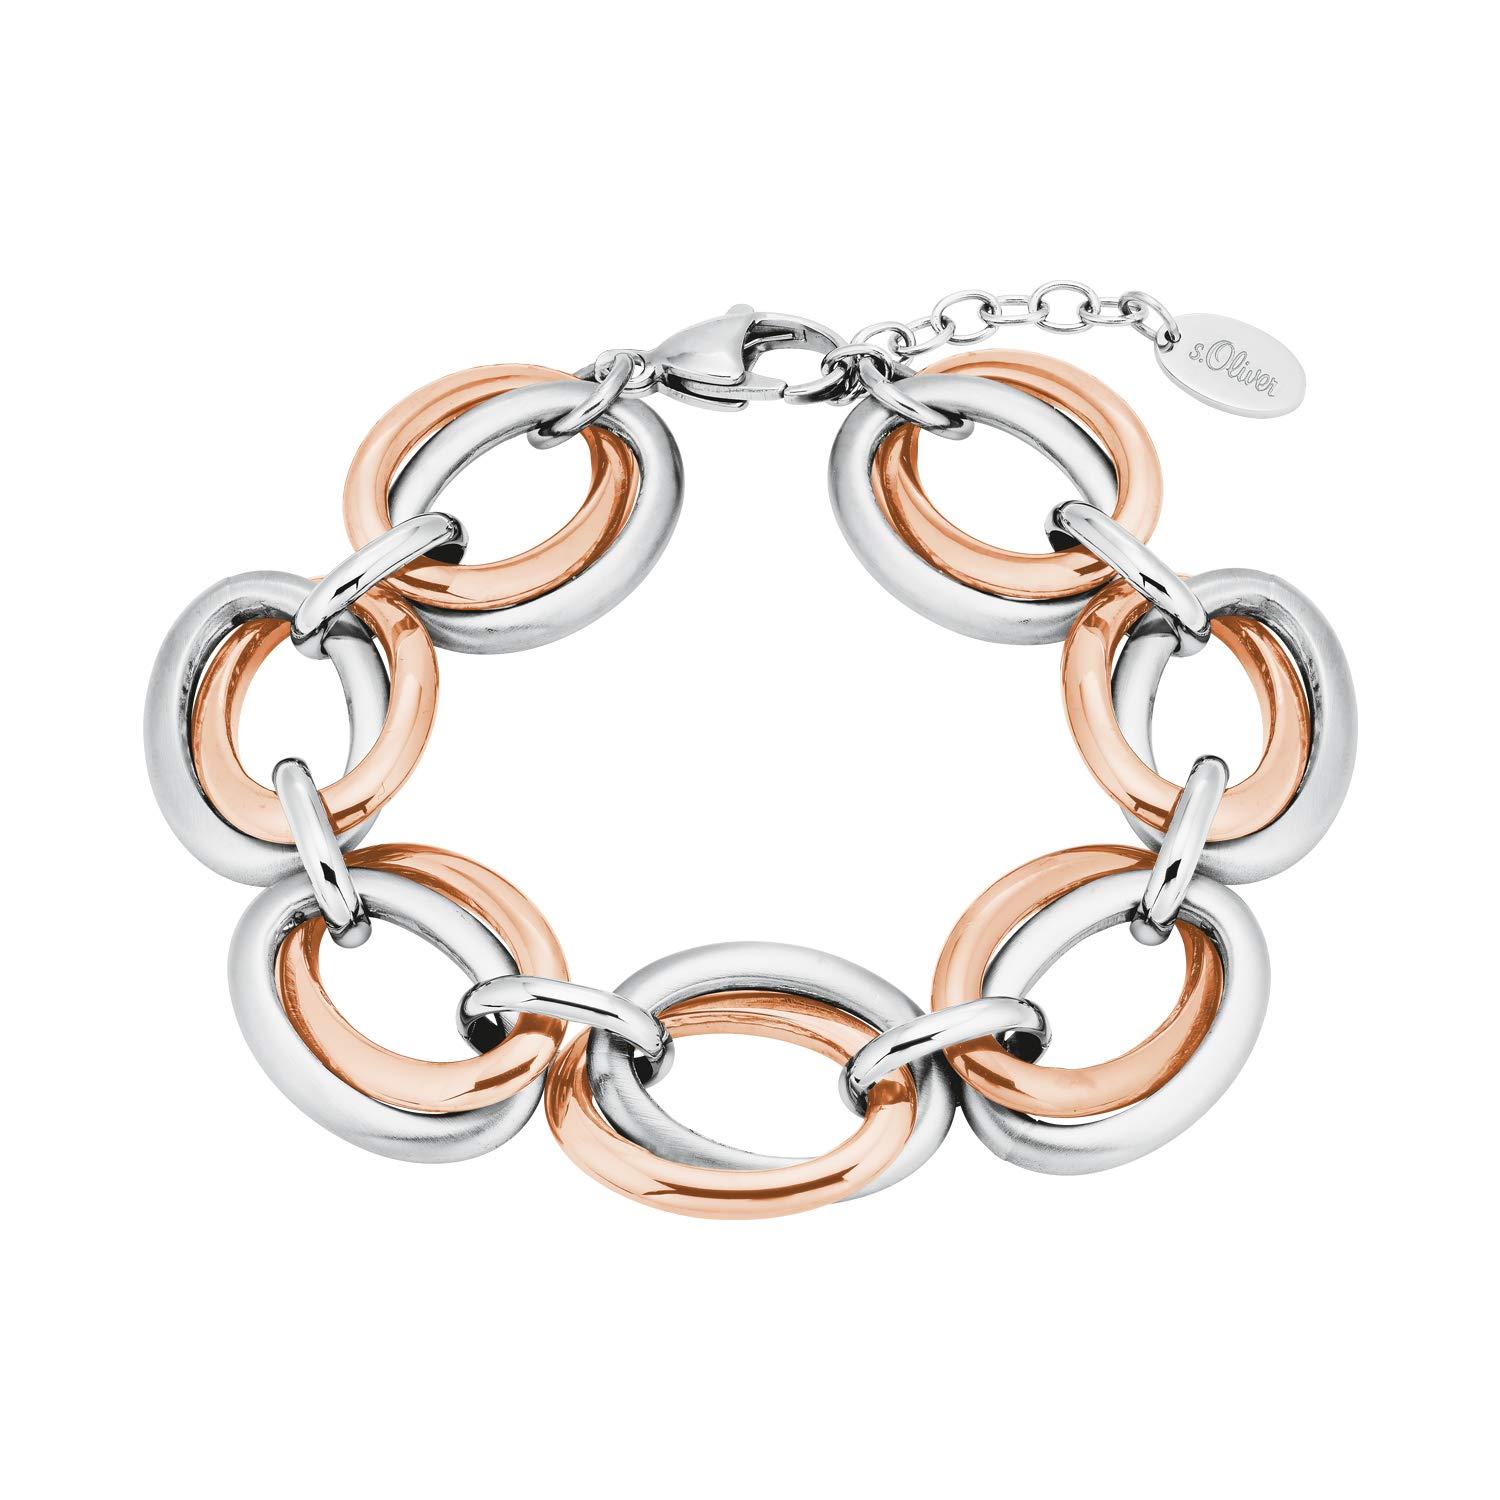 Armband bicolor, in Silber und Damen roségold s.Oliver Edelstahl,